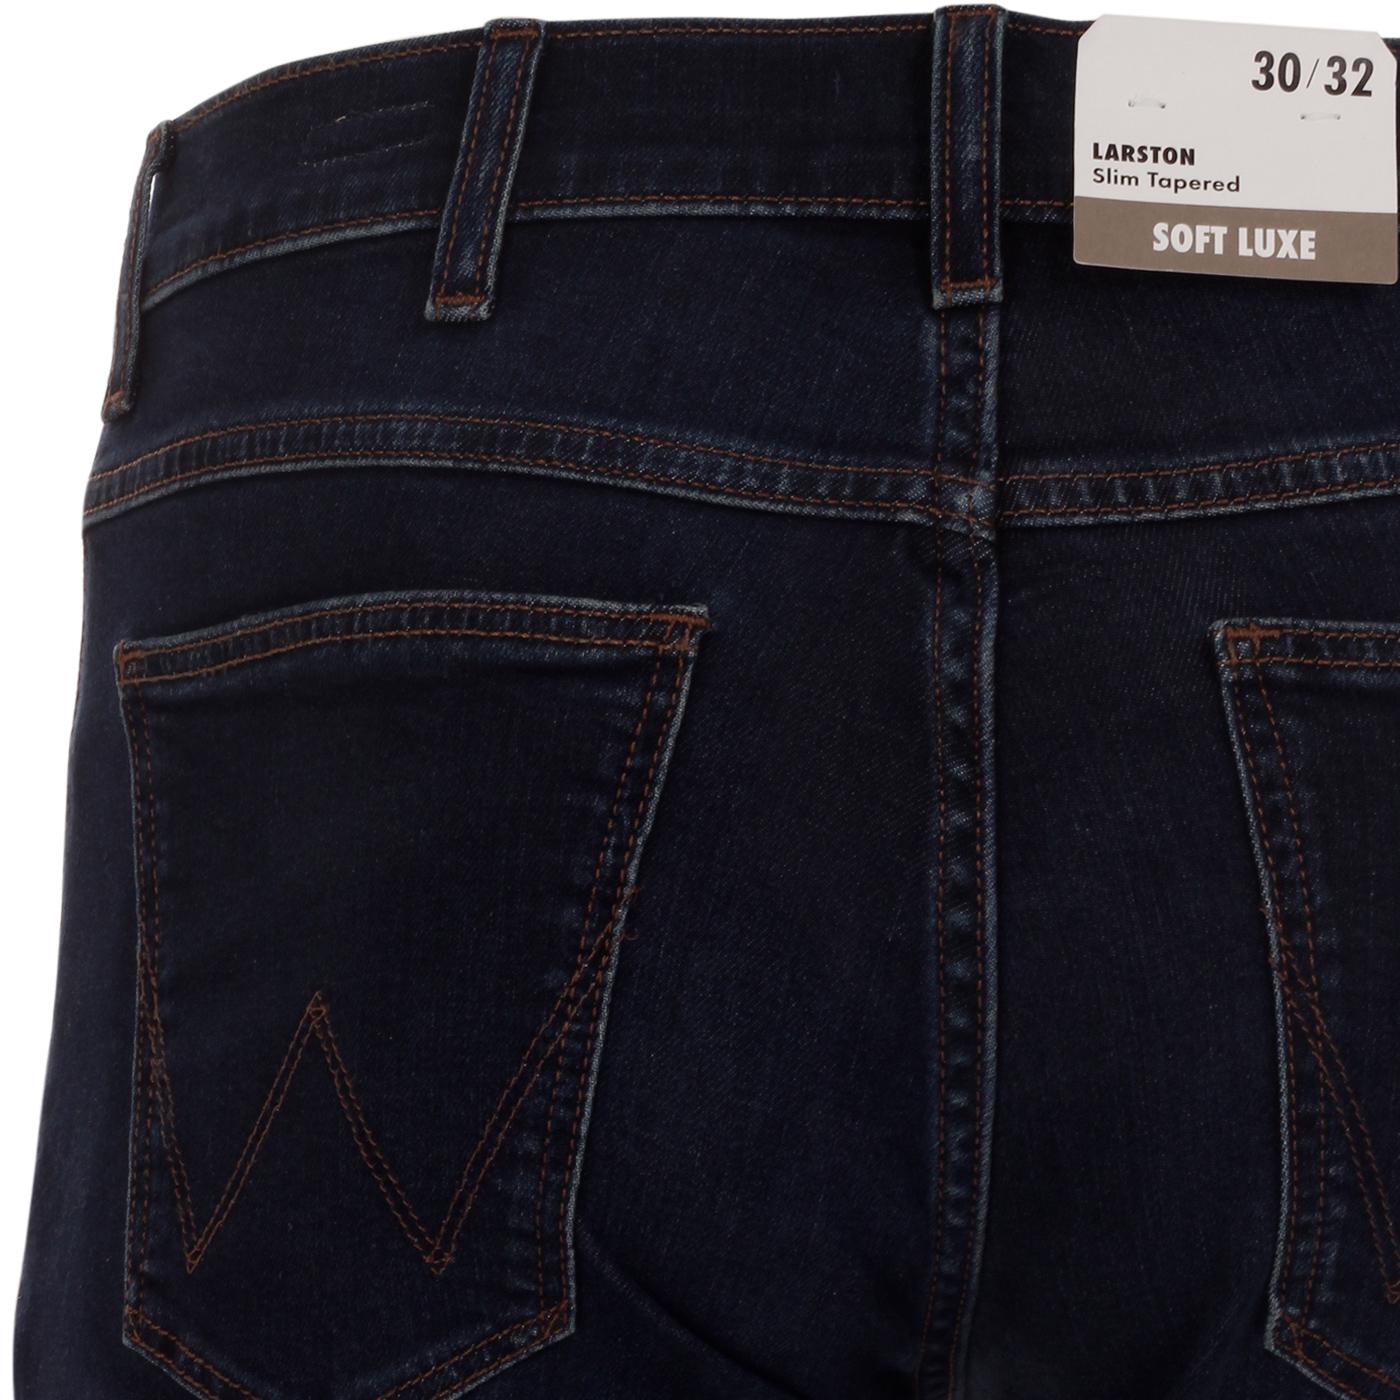 WRANGLER Larston Slim Tapered Denim Jeans in Soft Walk